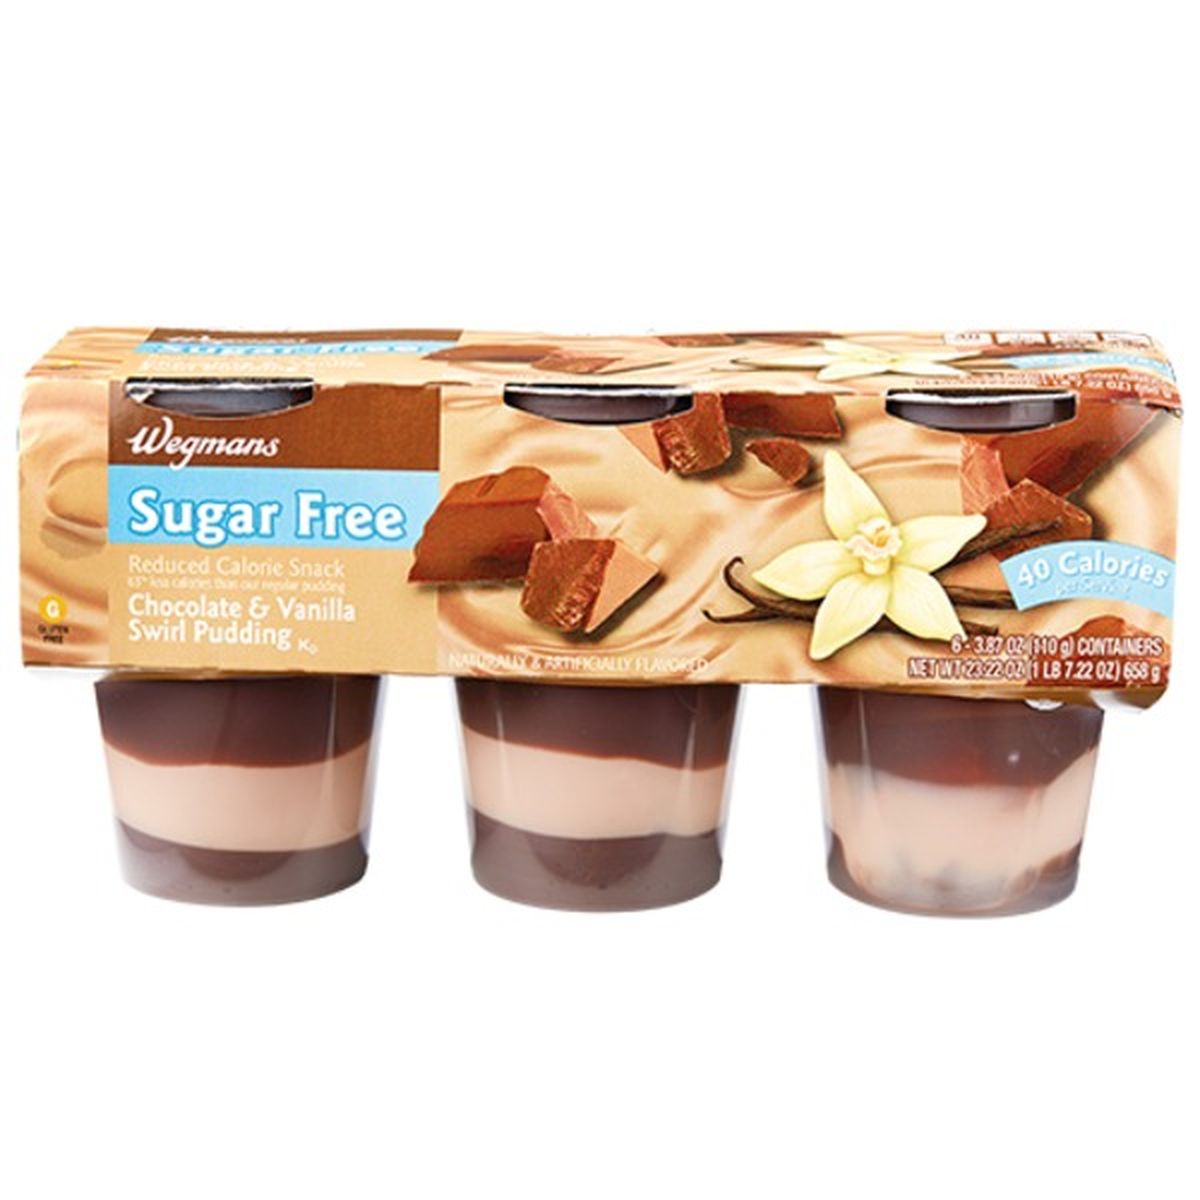 Calories in Wegmans Sugar Free Chocolate & Vanilla Swirl Pudding, 6 Pack